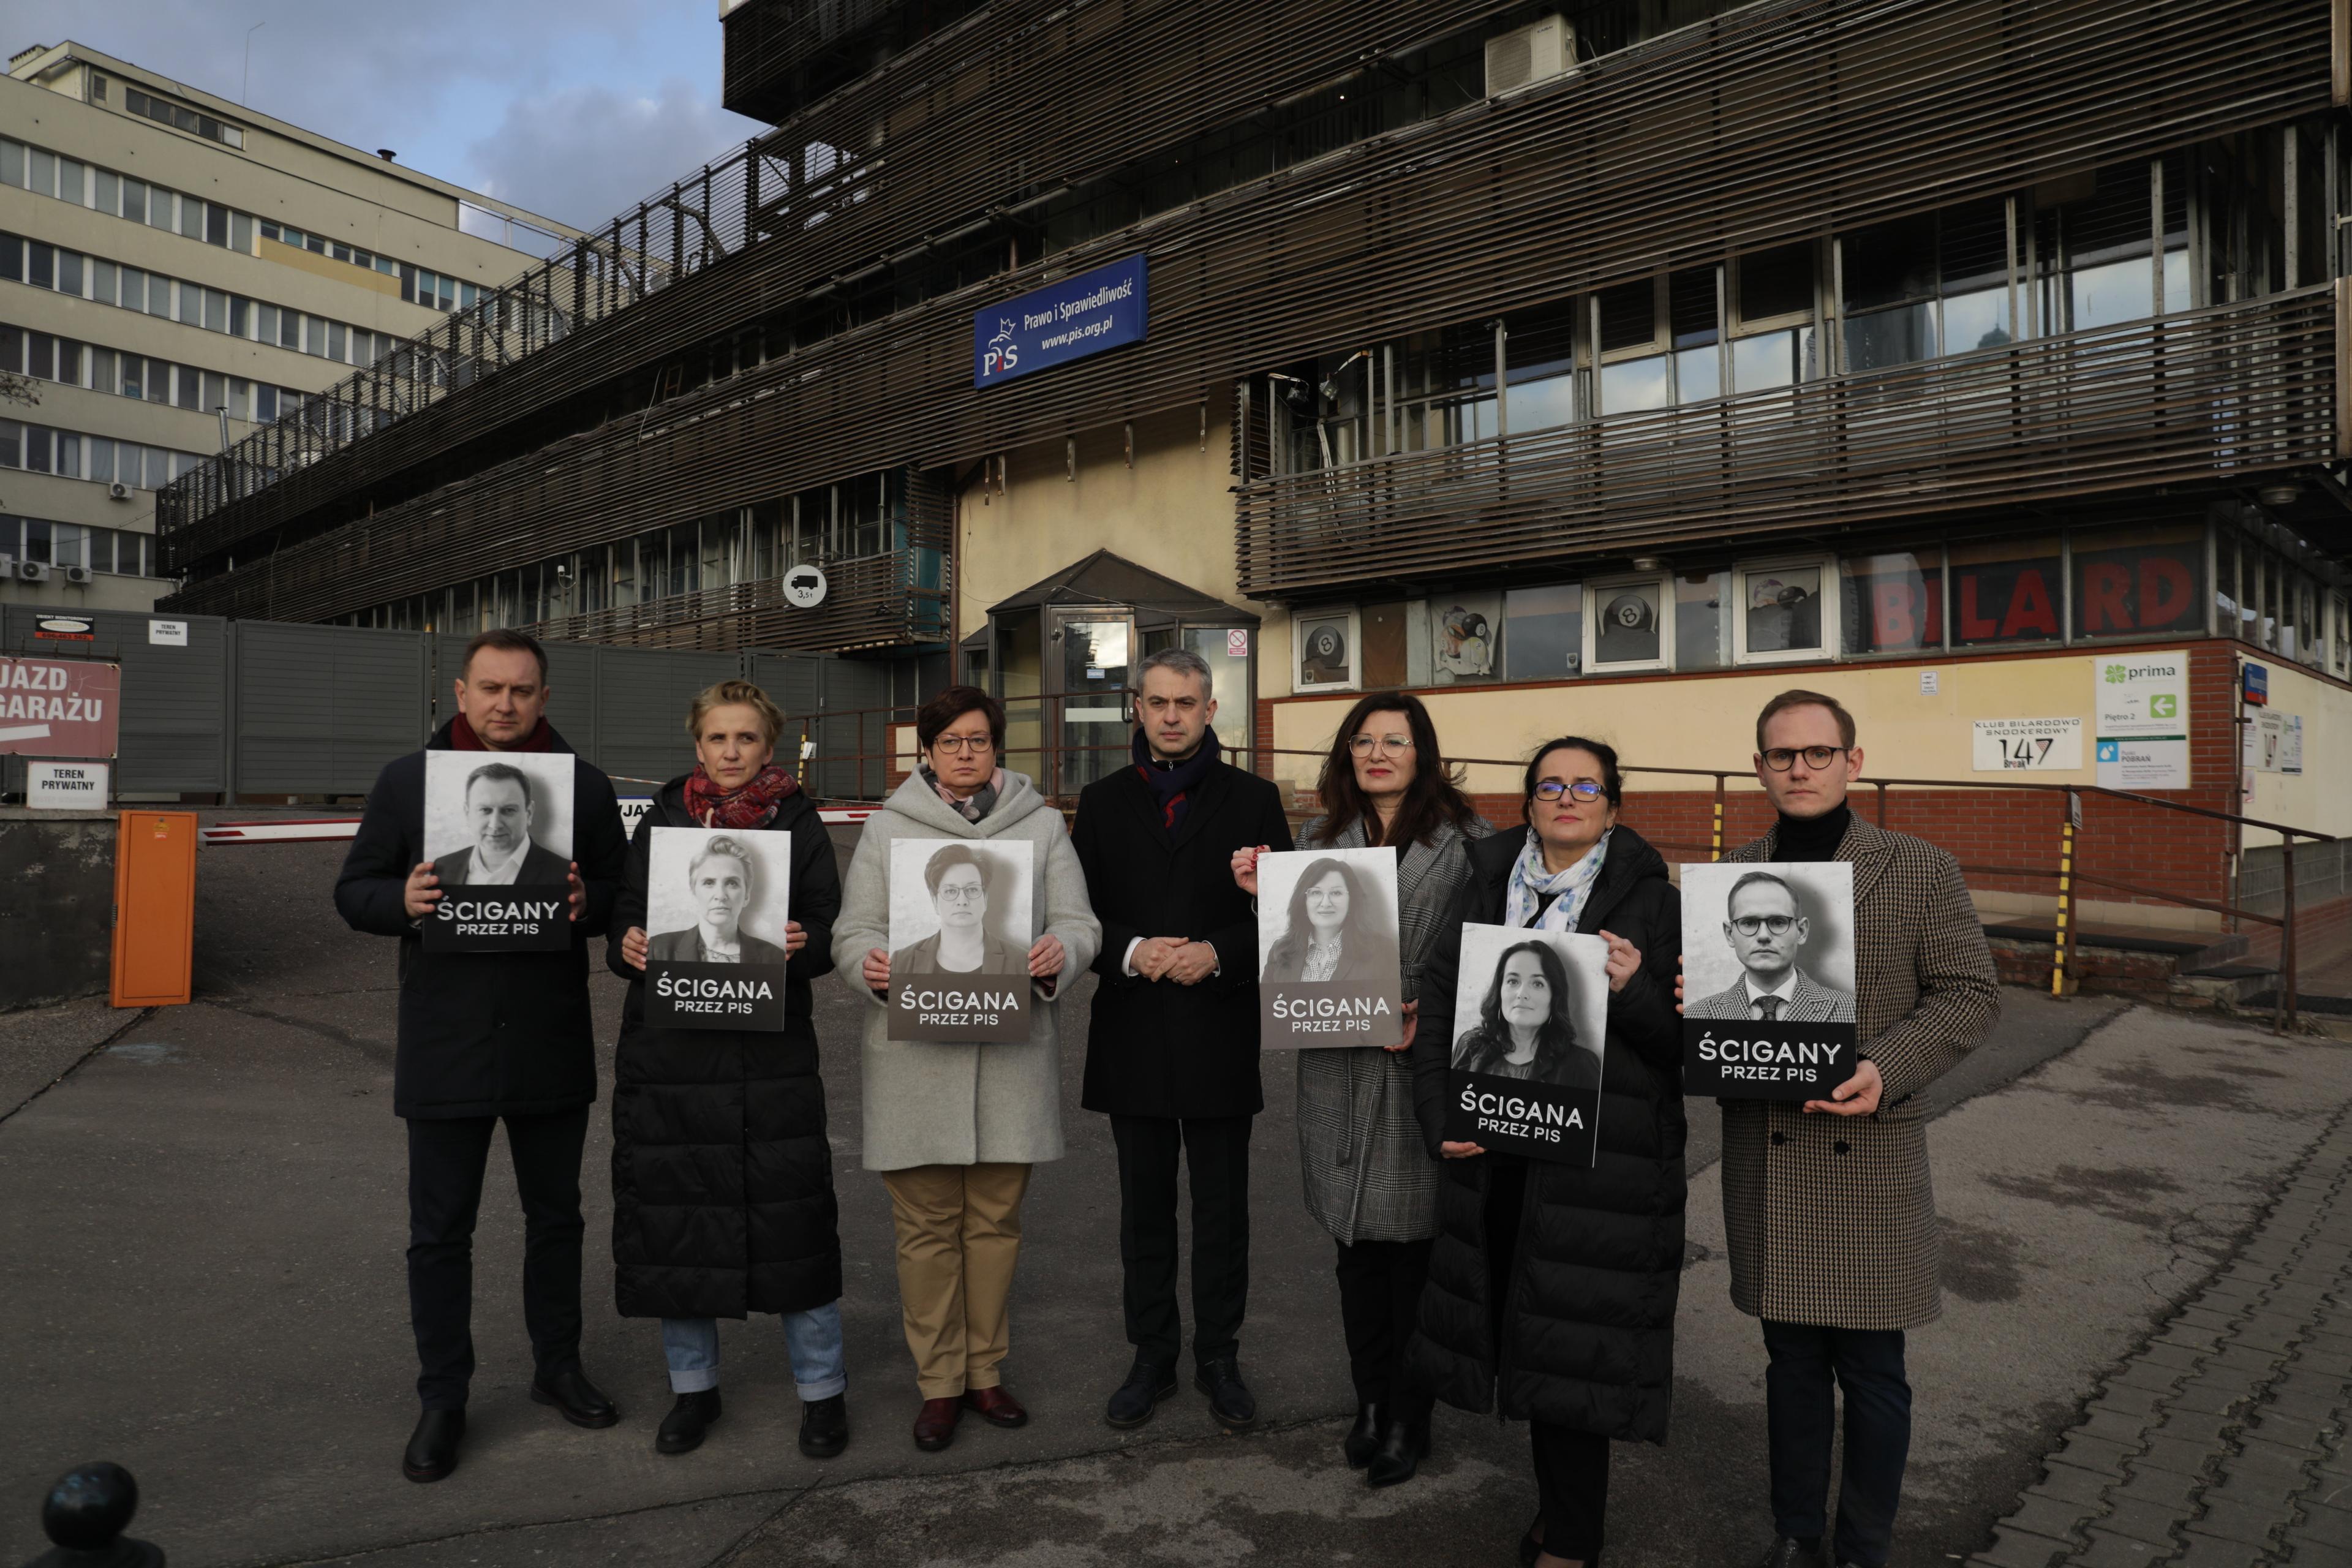 Sześć osób pozuje do zdjęcia trzymając swoje fotografie z napisem "Ścigany/Ścigana"